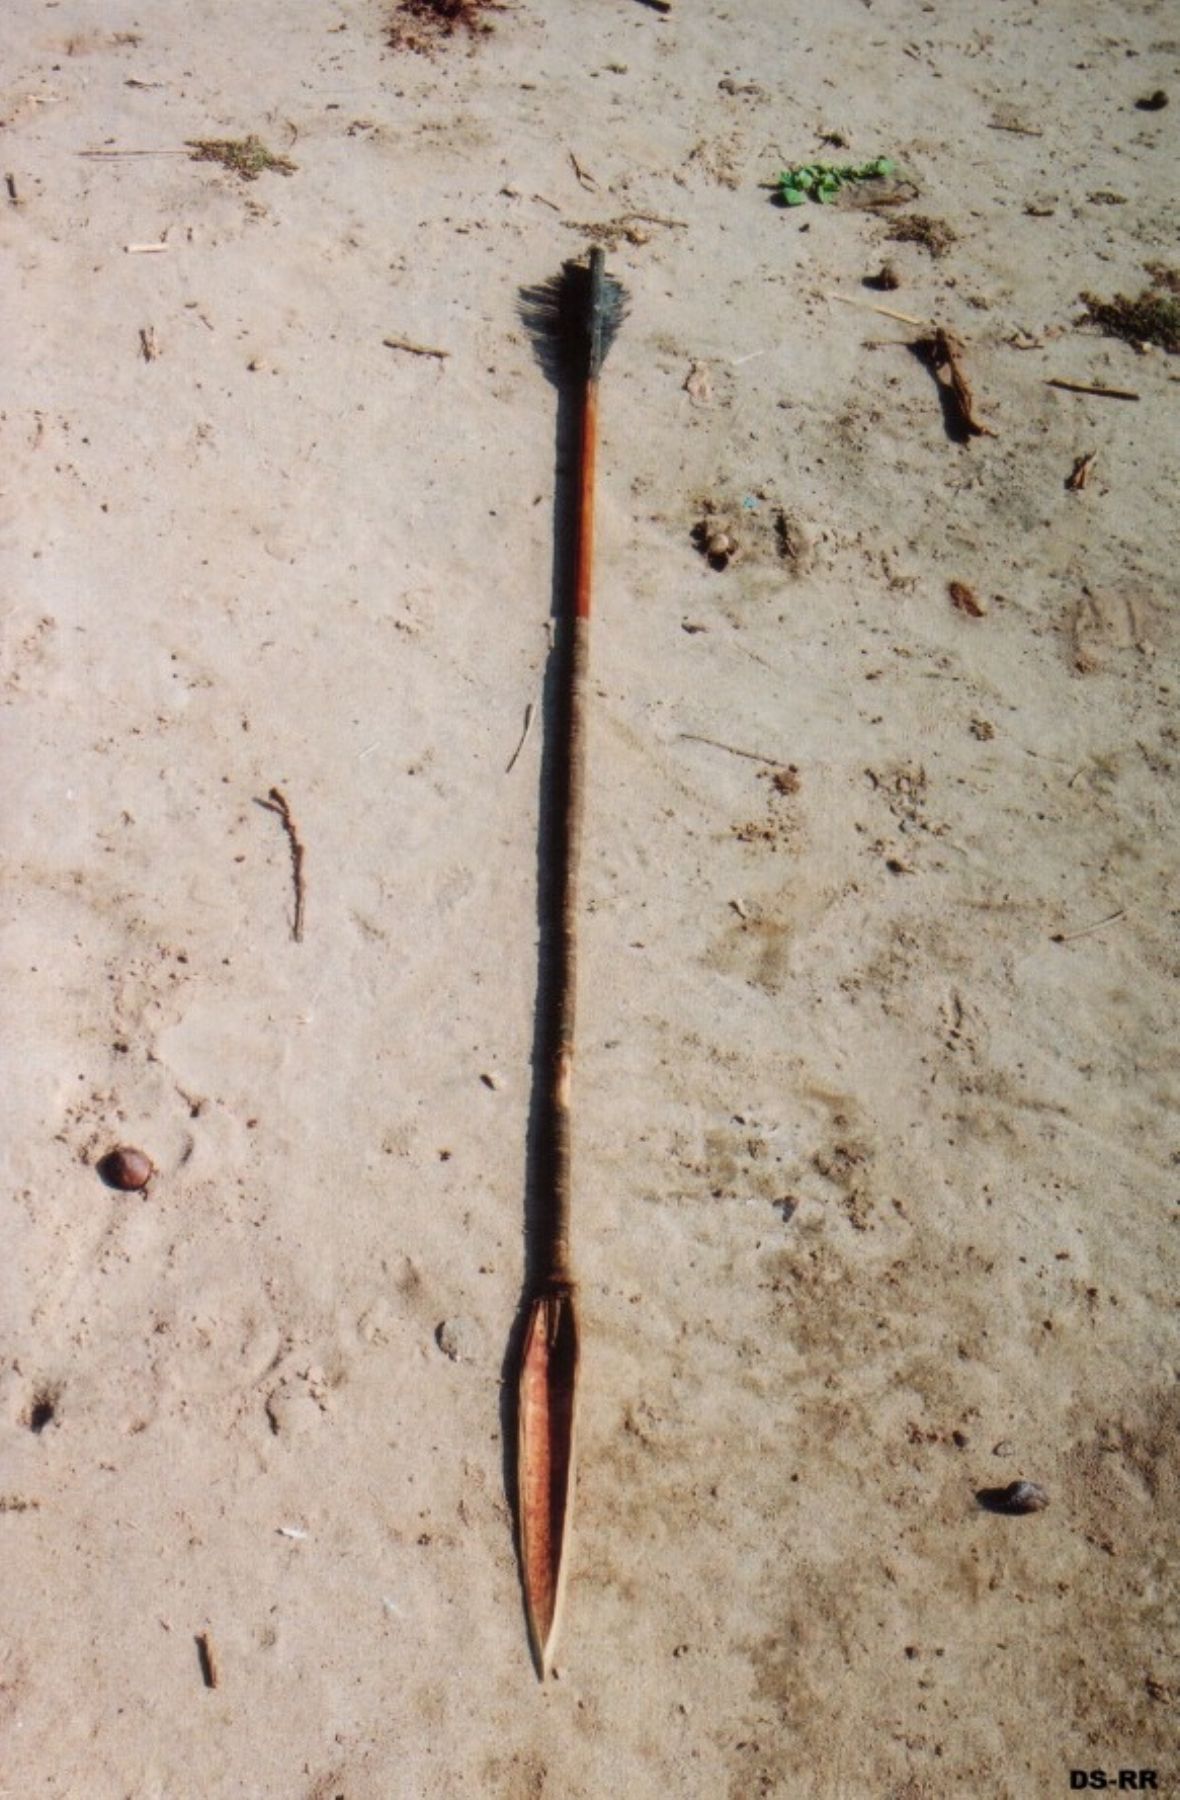 Flecha de nativo no contactado encontrada en Parque Nacional Alto Purús. Foto: ANDINA / Inrena.